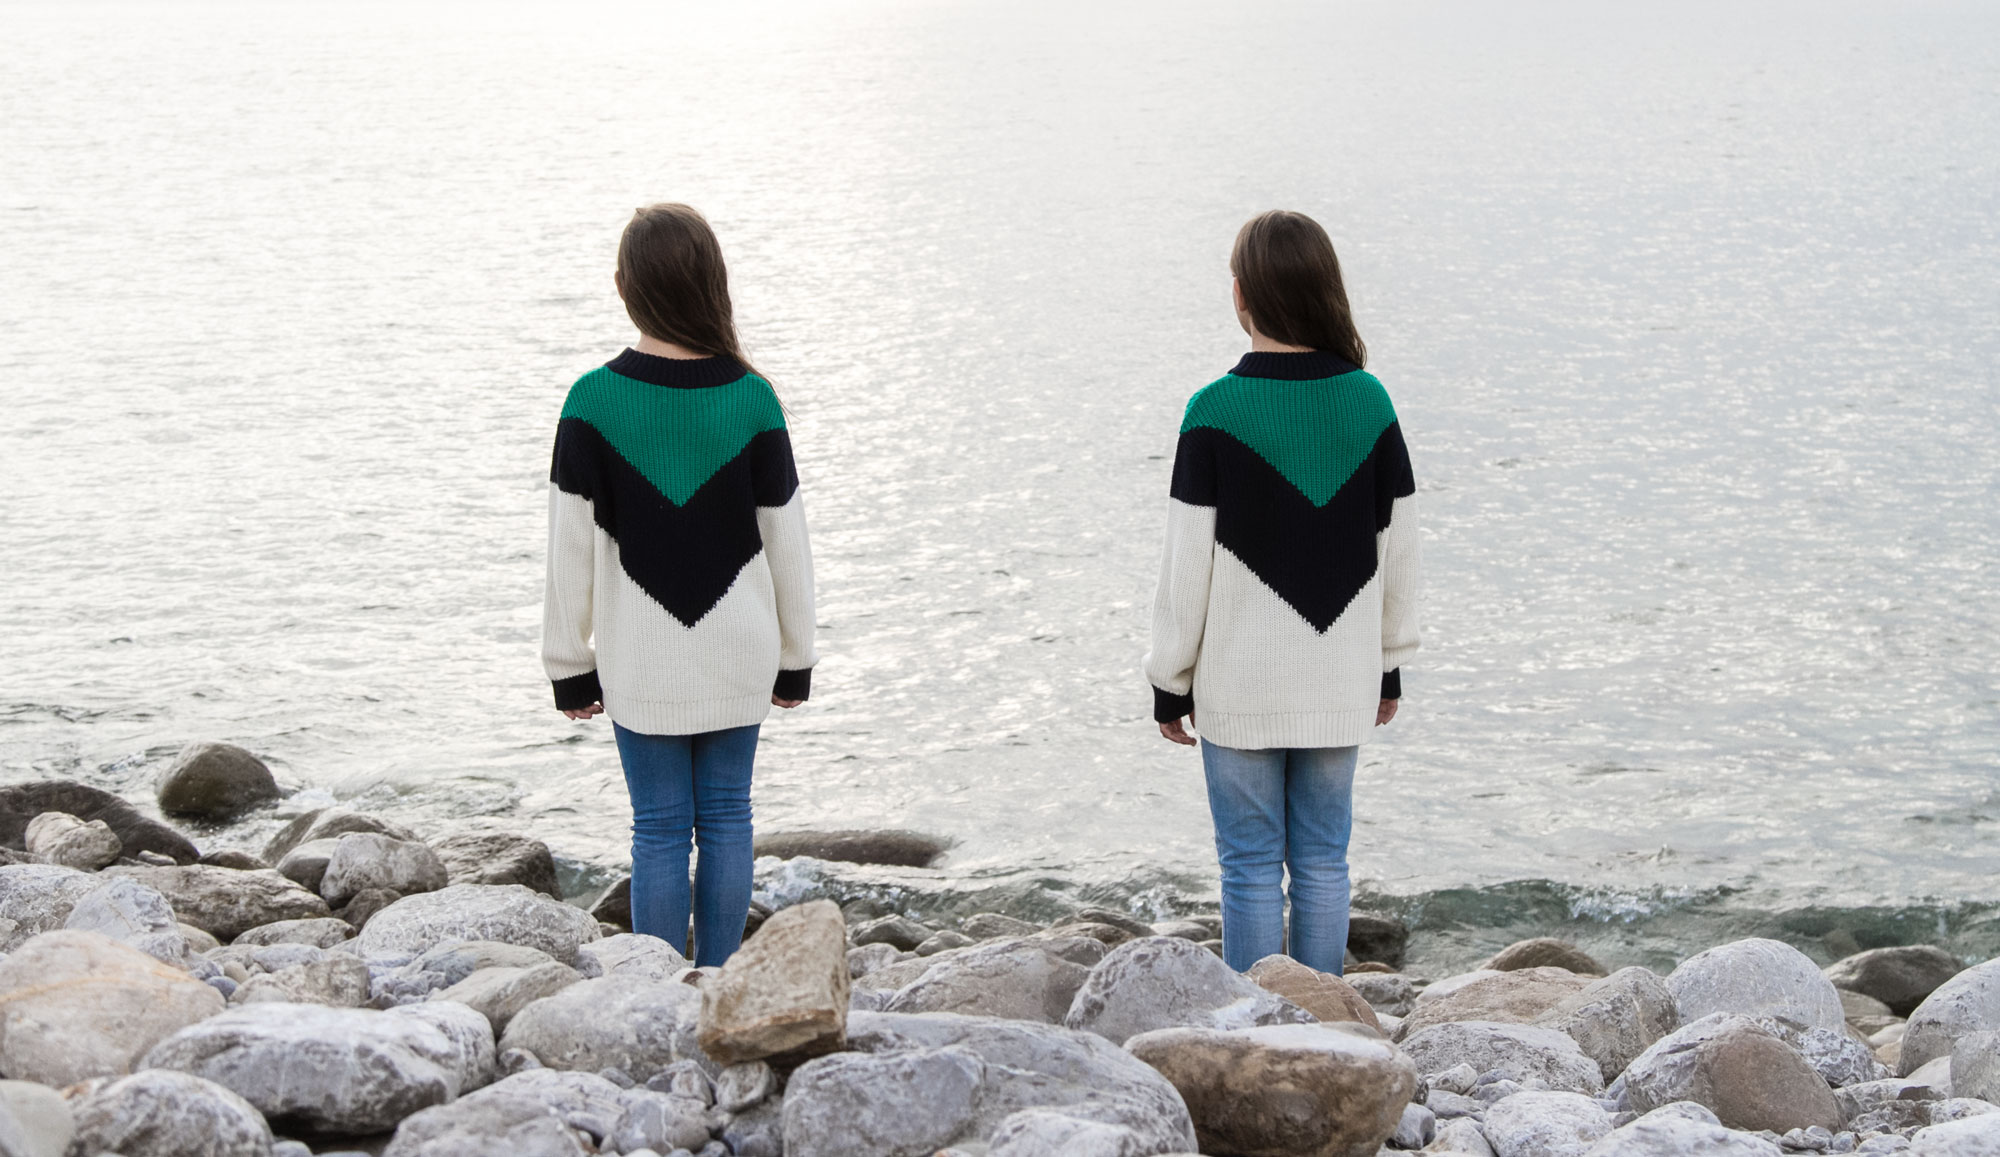 Twins portrait editorial by Maria Santos - Fotografía creativa en Ibiza